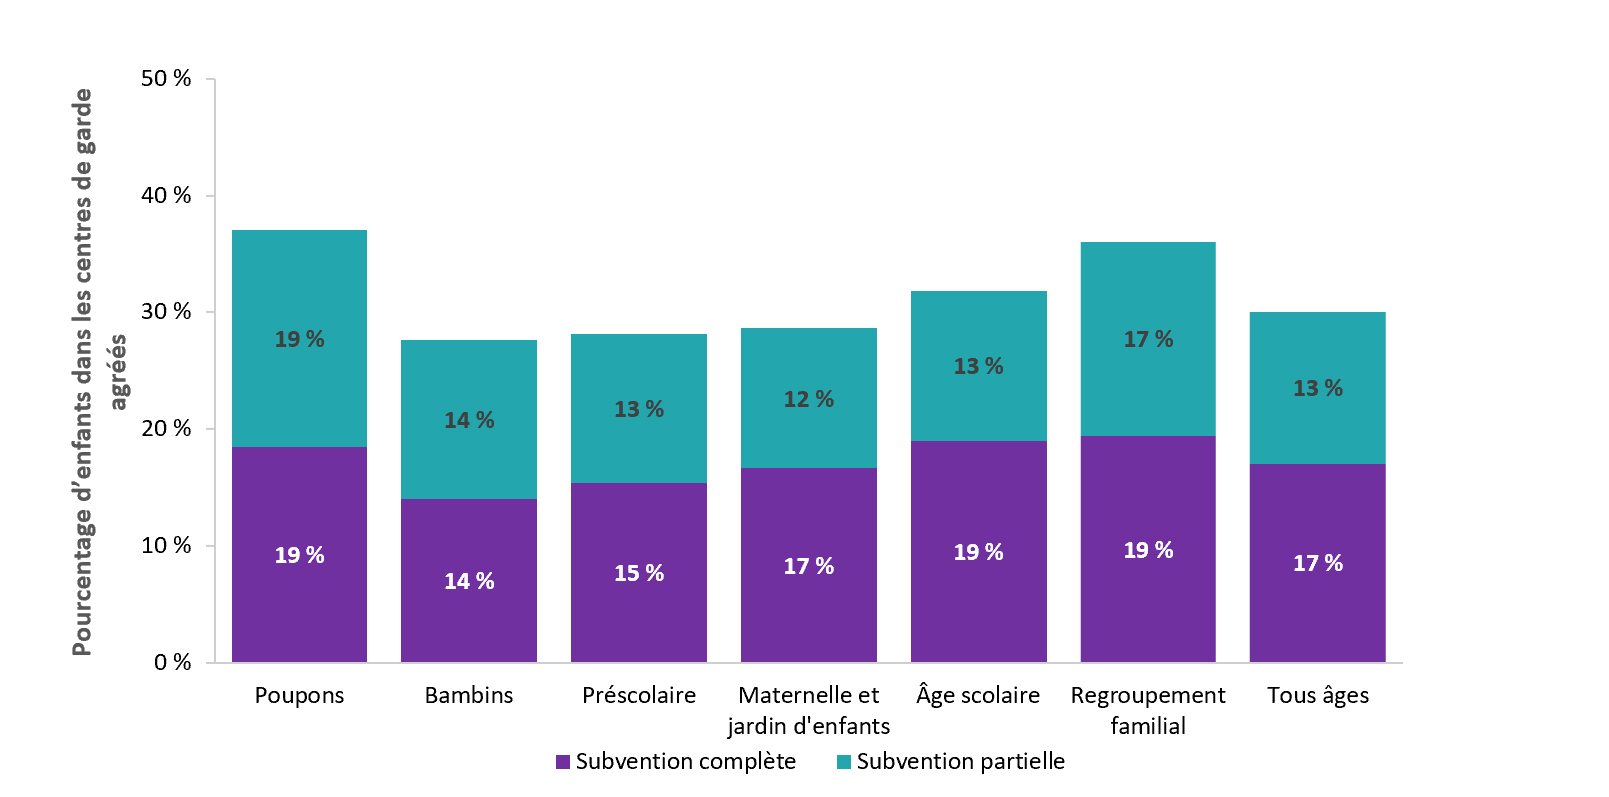 Pourcentage d'enfants dans les centres de garde agréés qui reçoivent des subventions completes ou partielles selon l'âge, en 2021